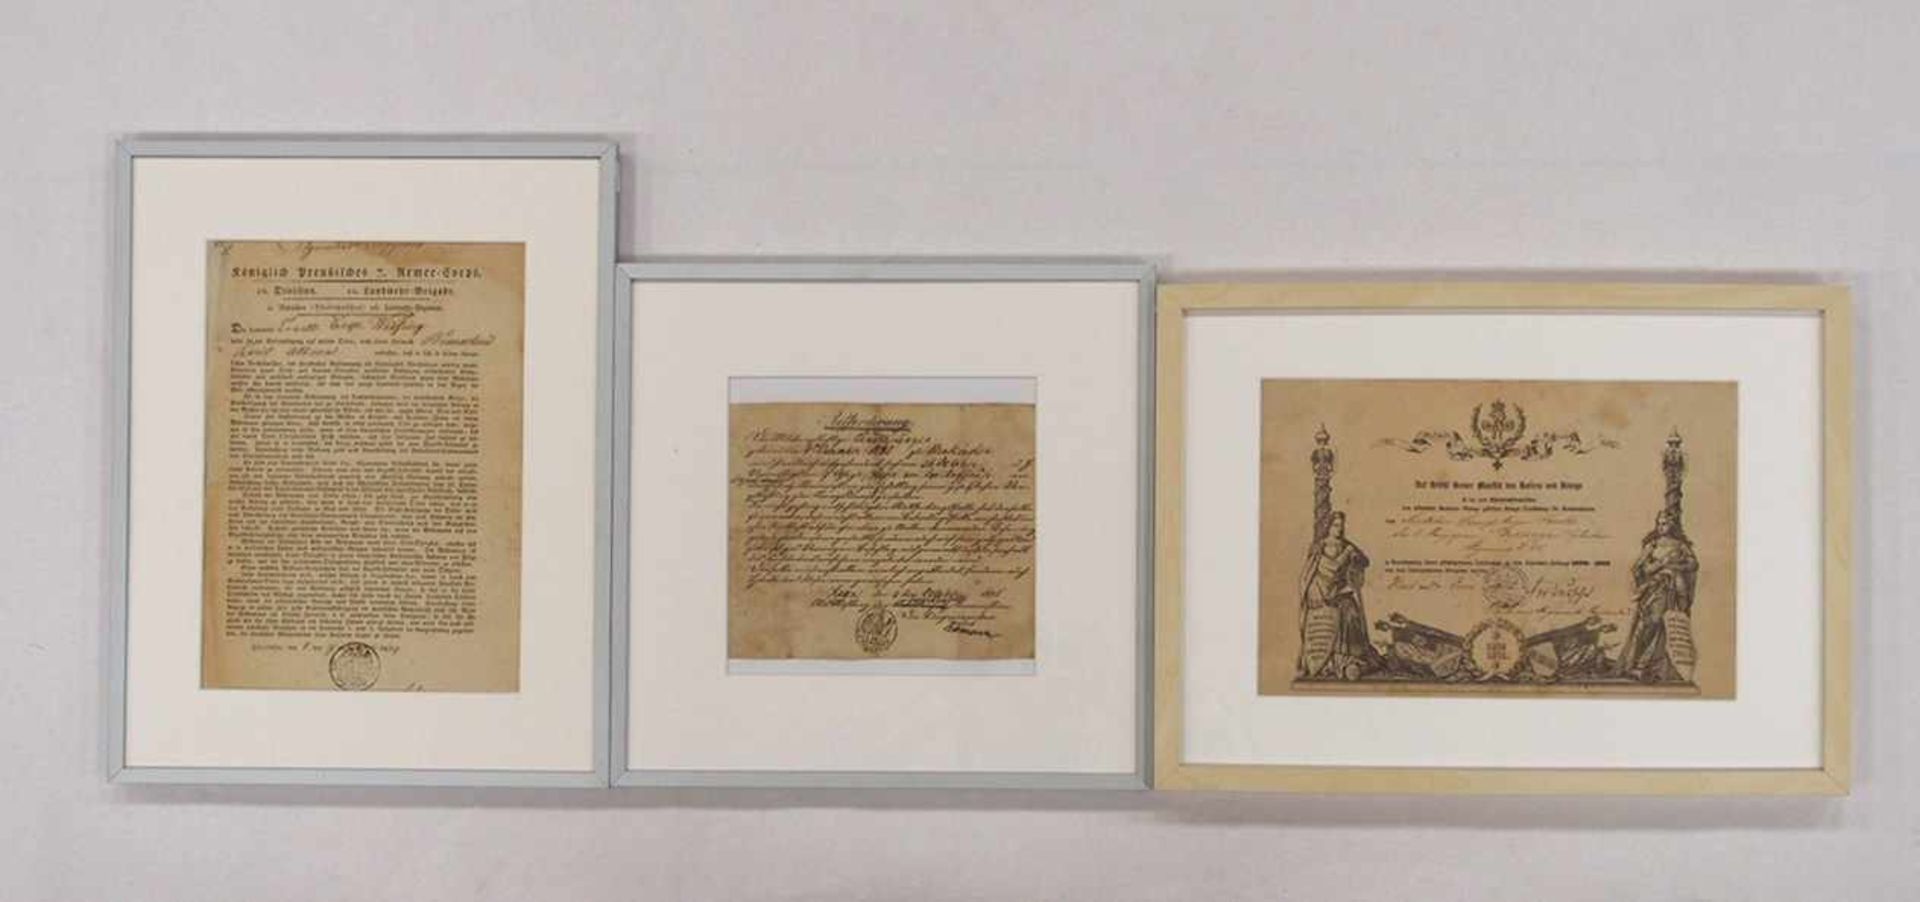 Drei preussische UrkundenEntlassung, Aufforderung und Auszeichnung, dat. 1829, 1836 und 1872, bis zu